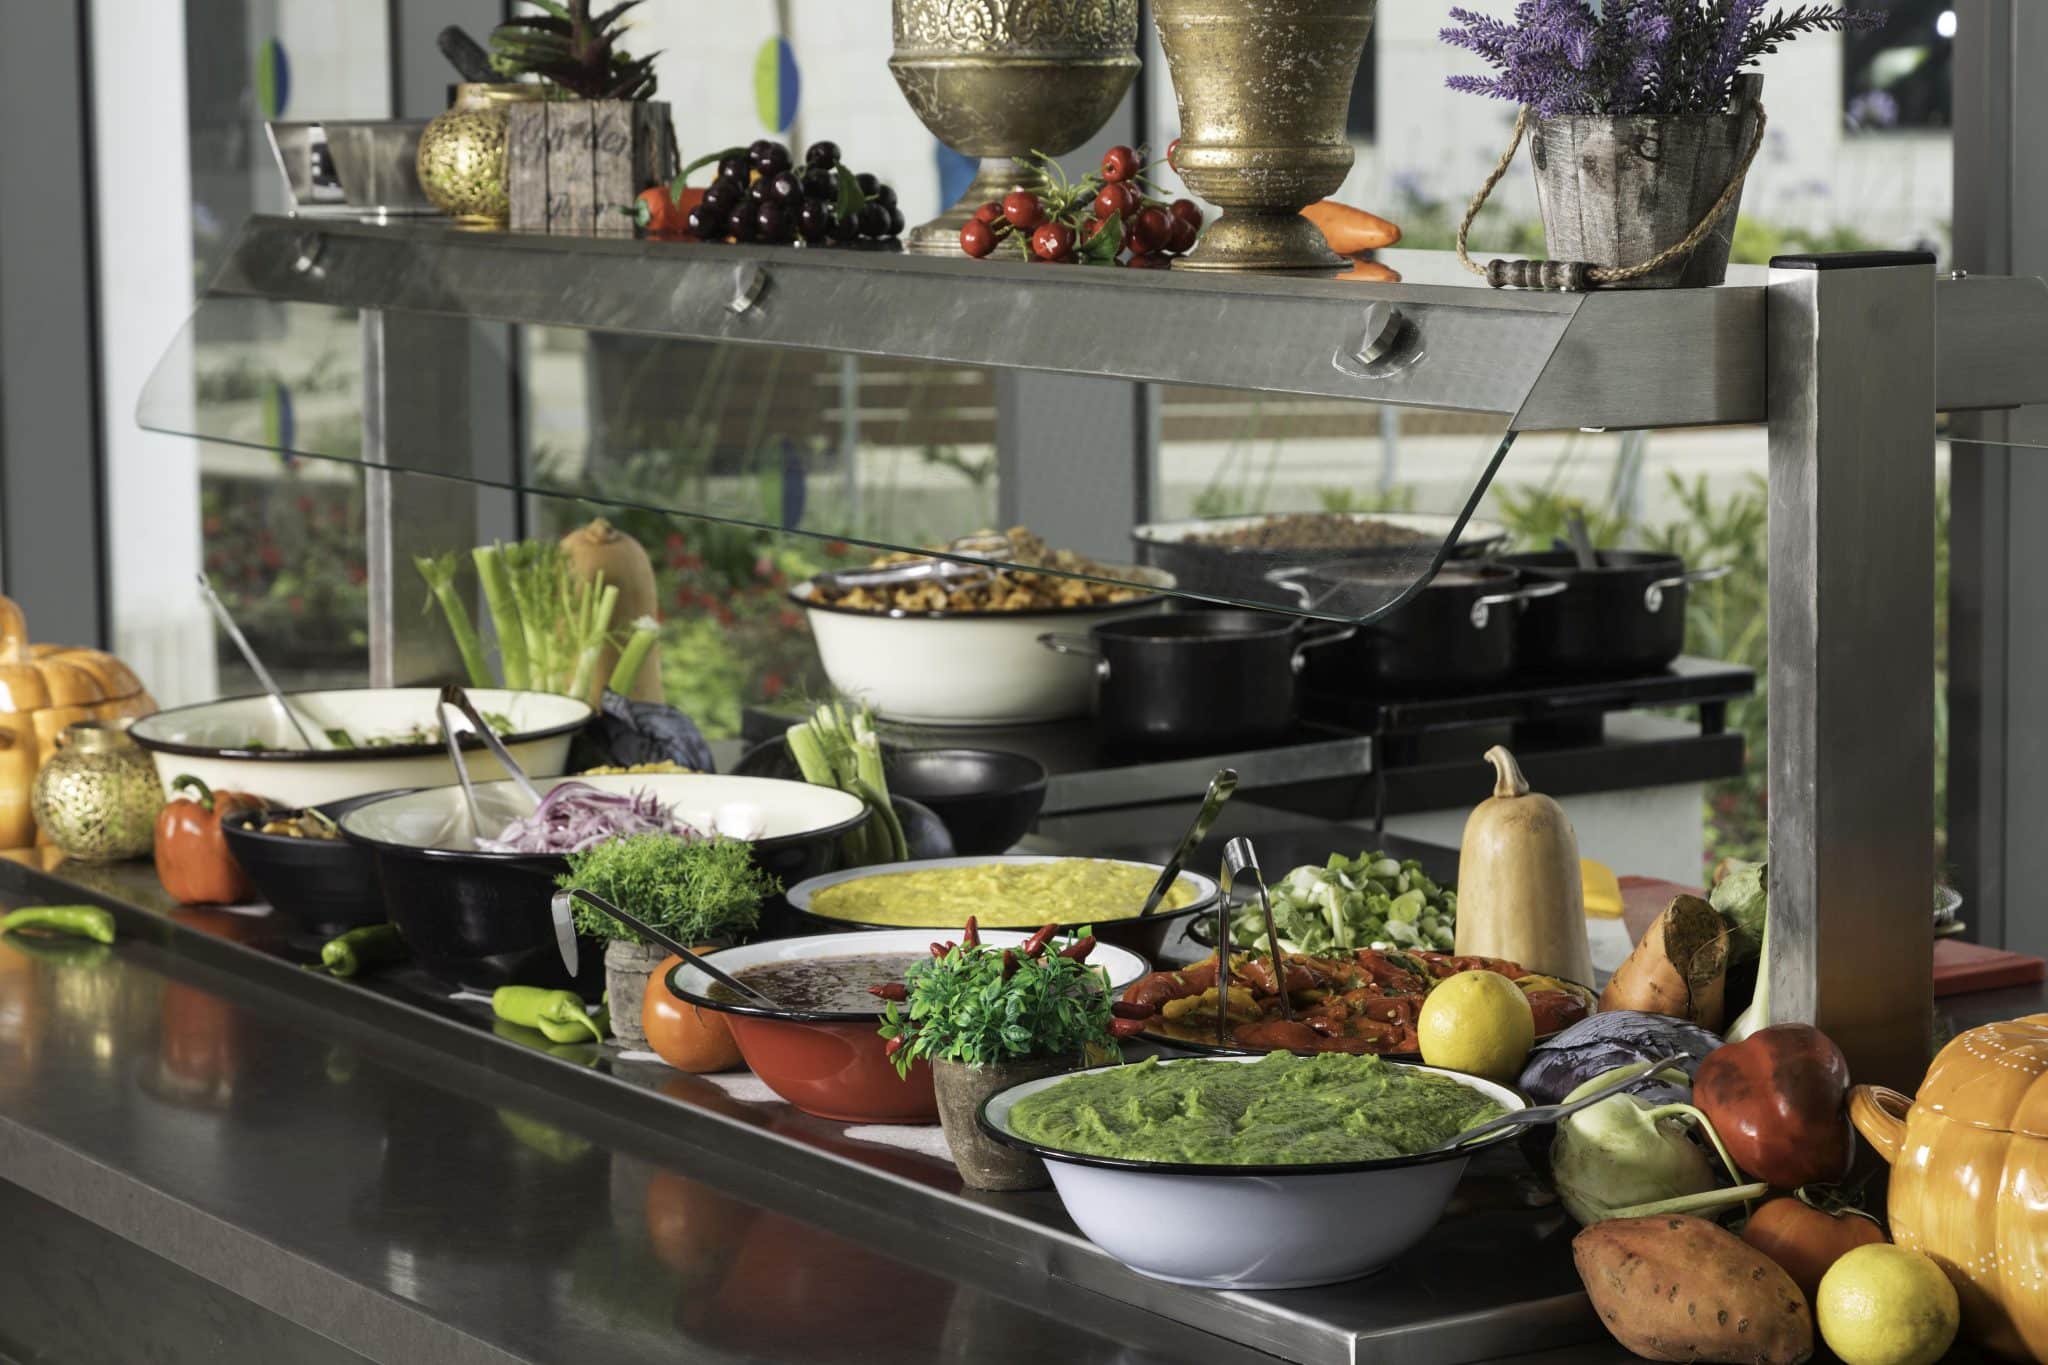 סוג האוכל המועדף ע"י העובדים בישראל בפער משמעותי הינו המטבח הבשרי עם 14% מכלל ההזמנות במהלך השנה. צילום דניאל לילה